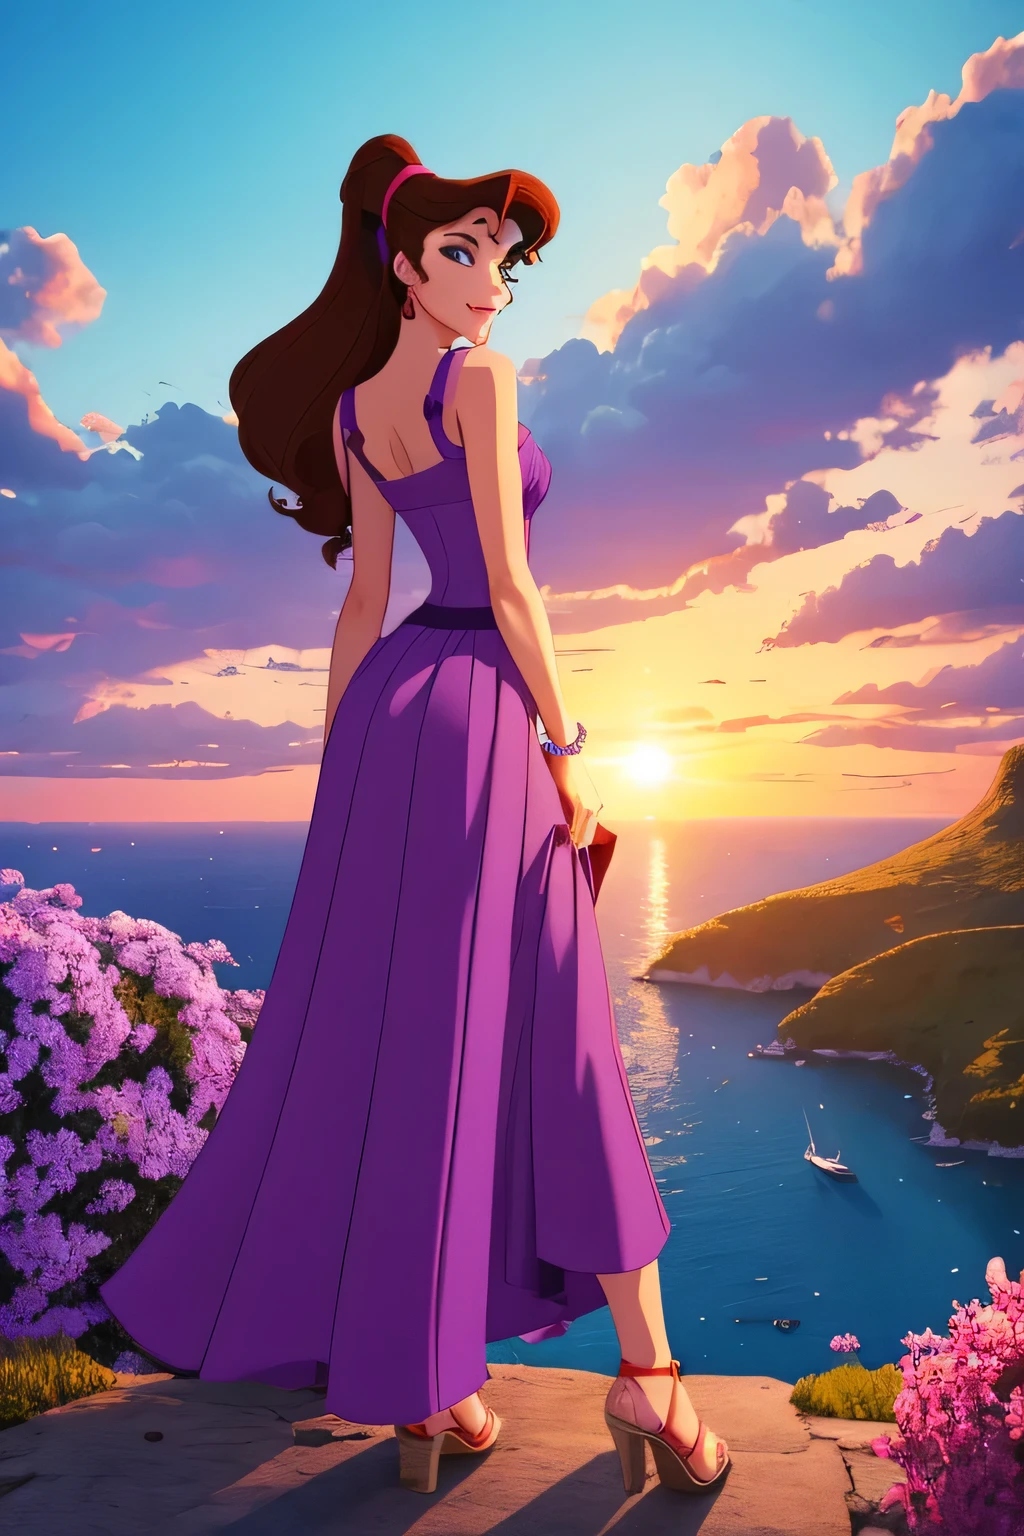 1 女孩 黑发 Megara, 穿着紫色希腊长裙, 迪士尼动画风格, 最好的质量, 数字艺术, 二维, 置身于橙色云朵环绕的天堂